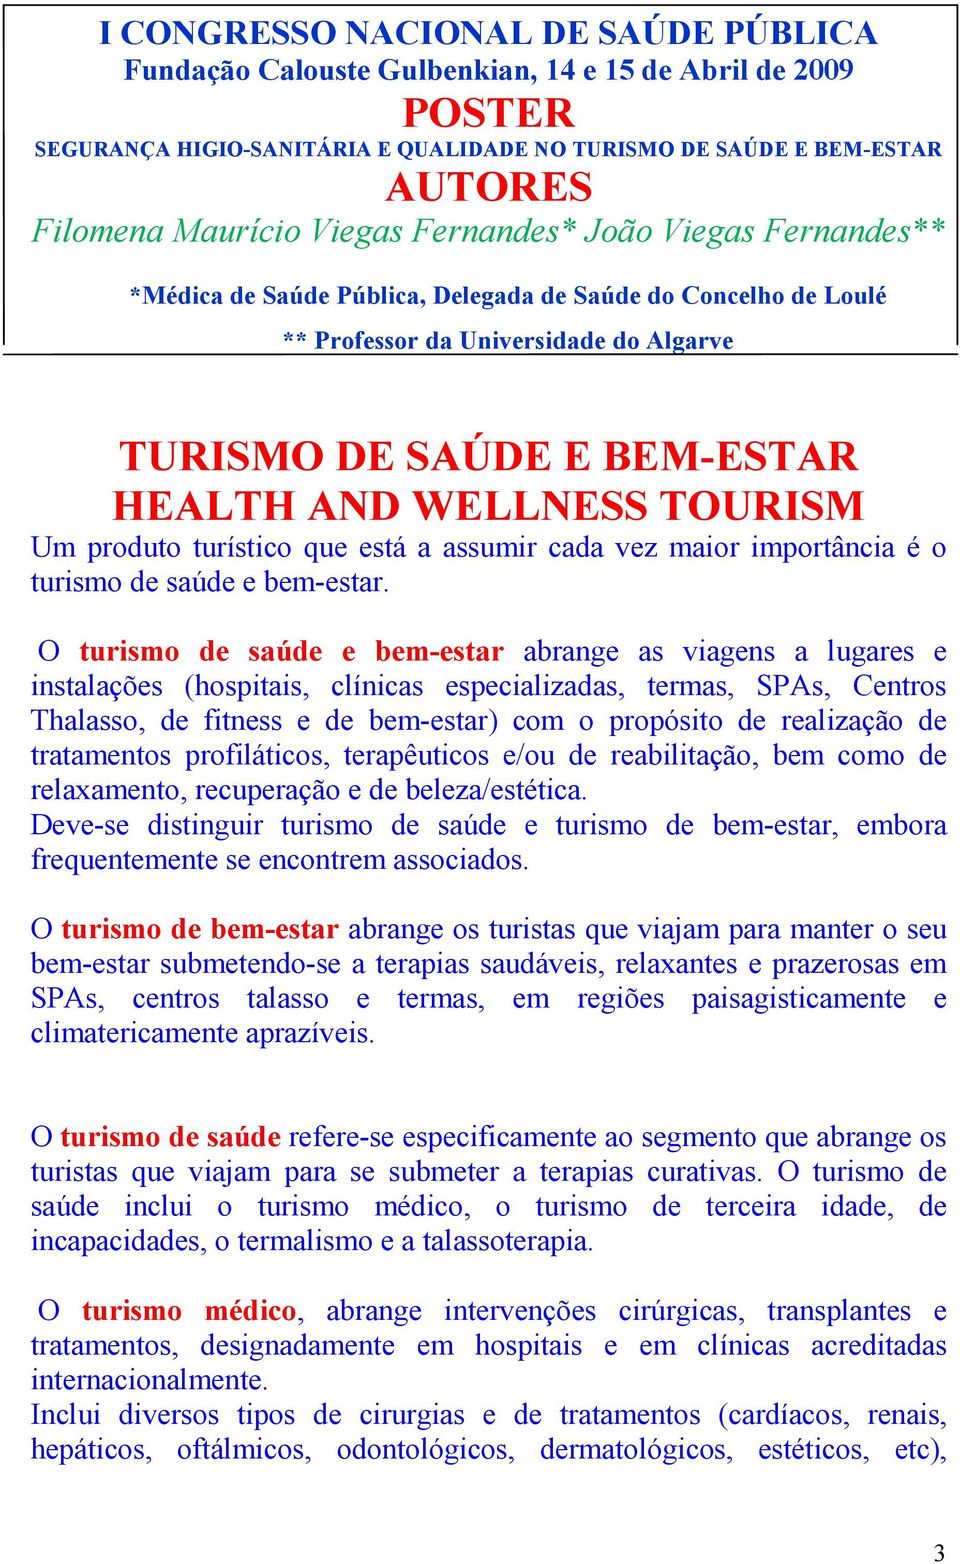 TOURISM Um produto turístico que está a assumir cada vez maior importância é o turismo de saúde e bem-estar.